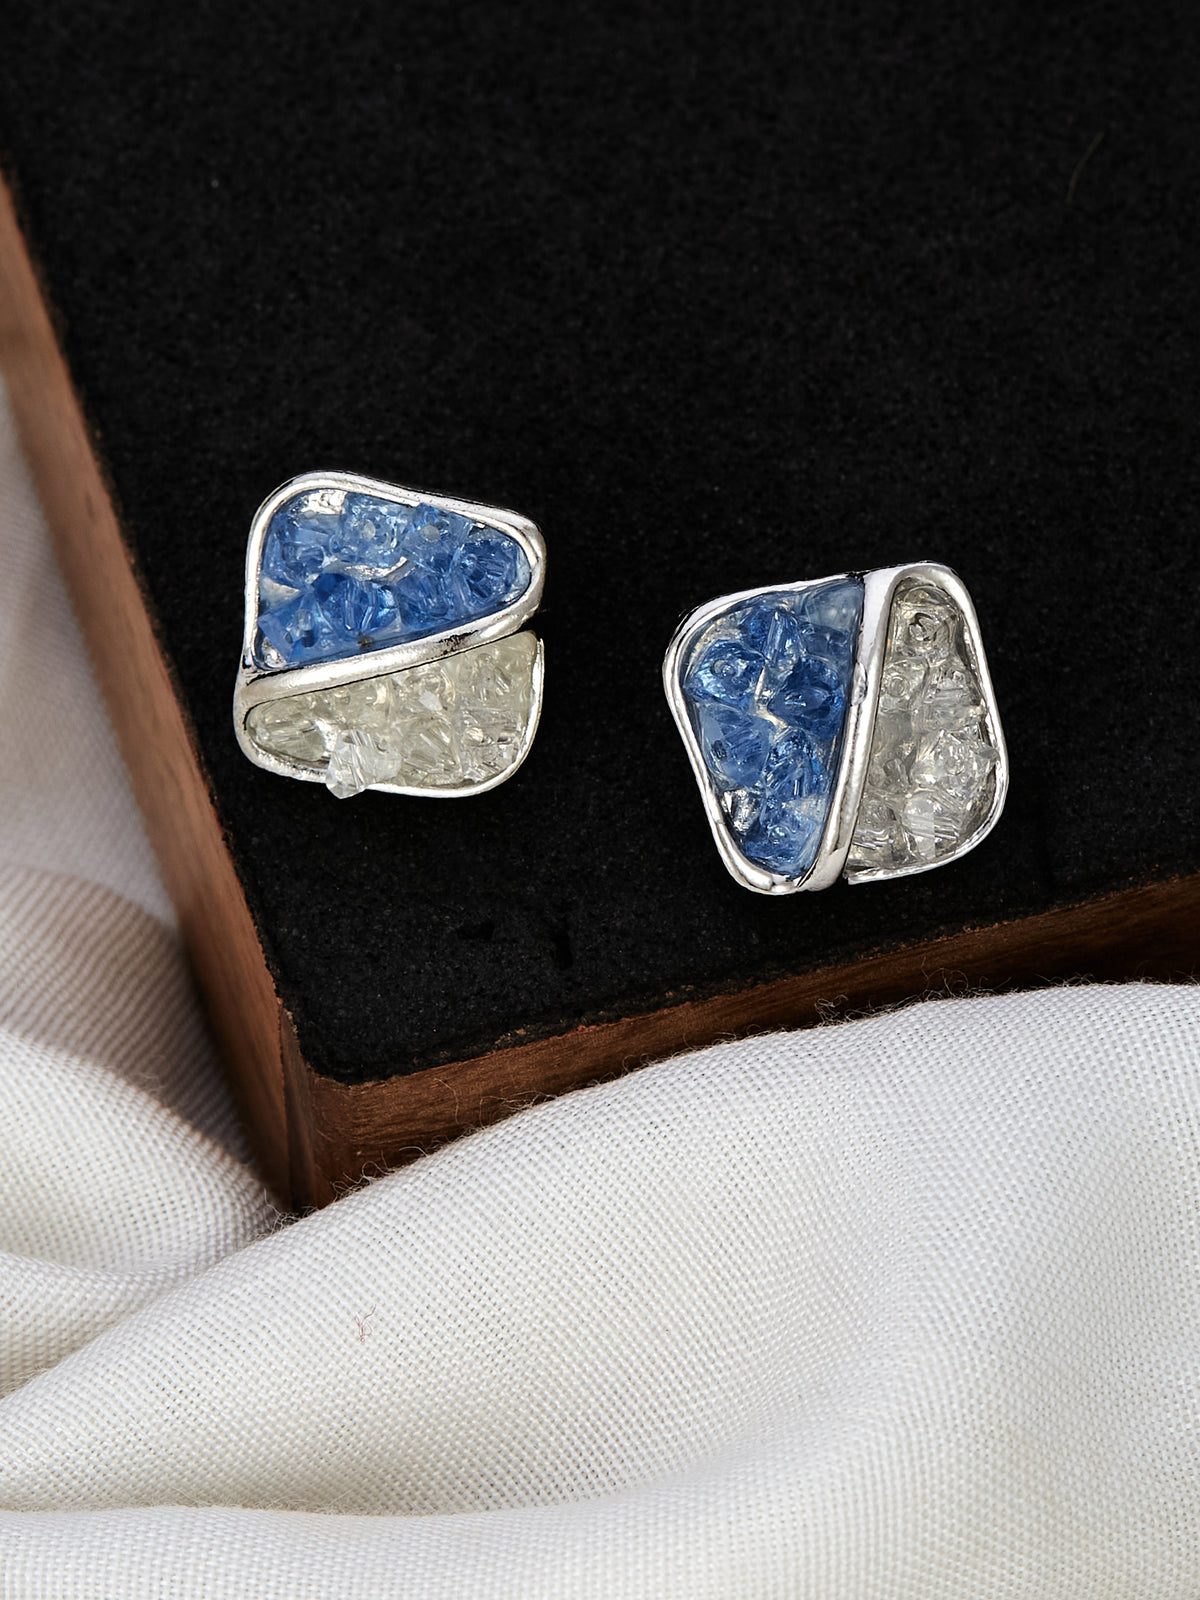 Stylish Silver & Blue Stud Earrings for women & girls